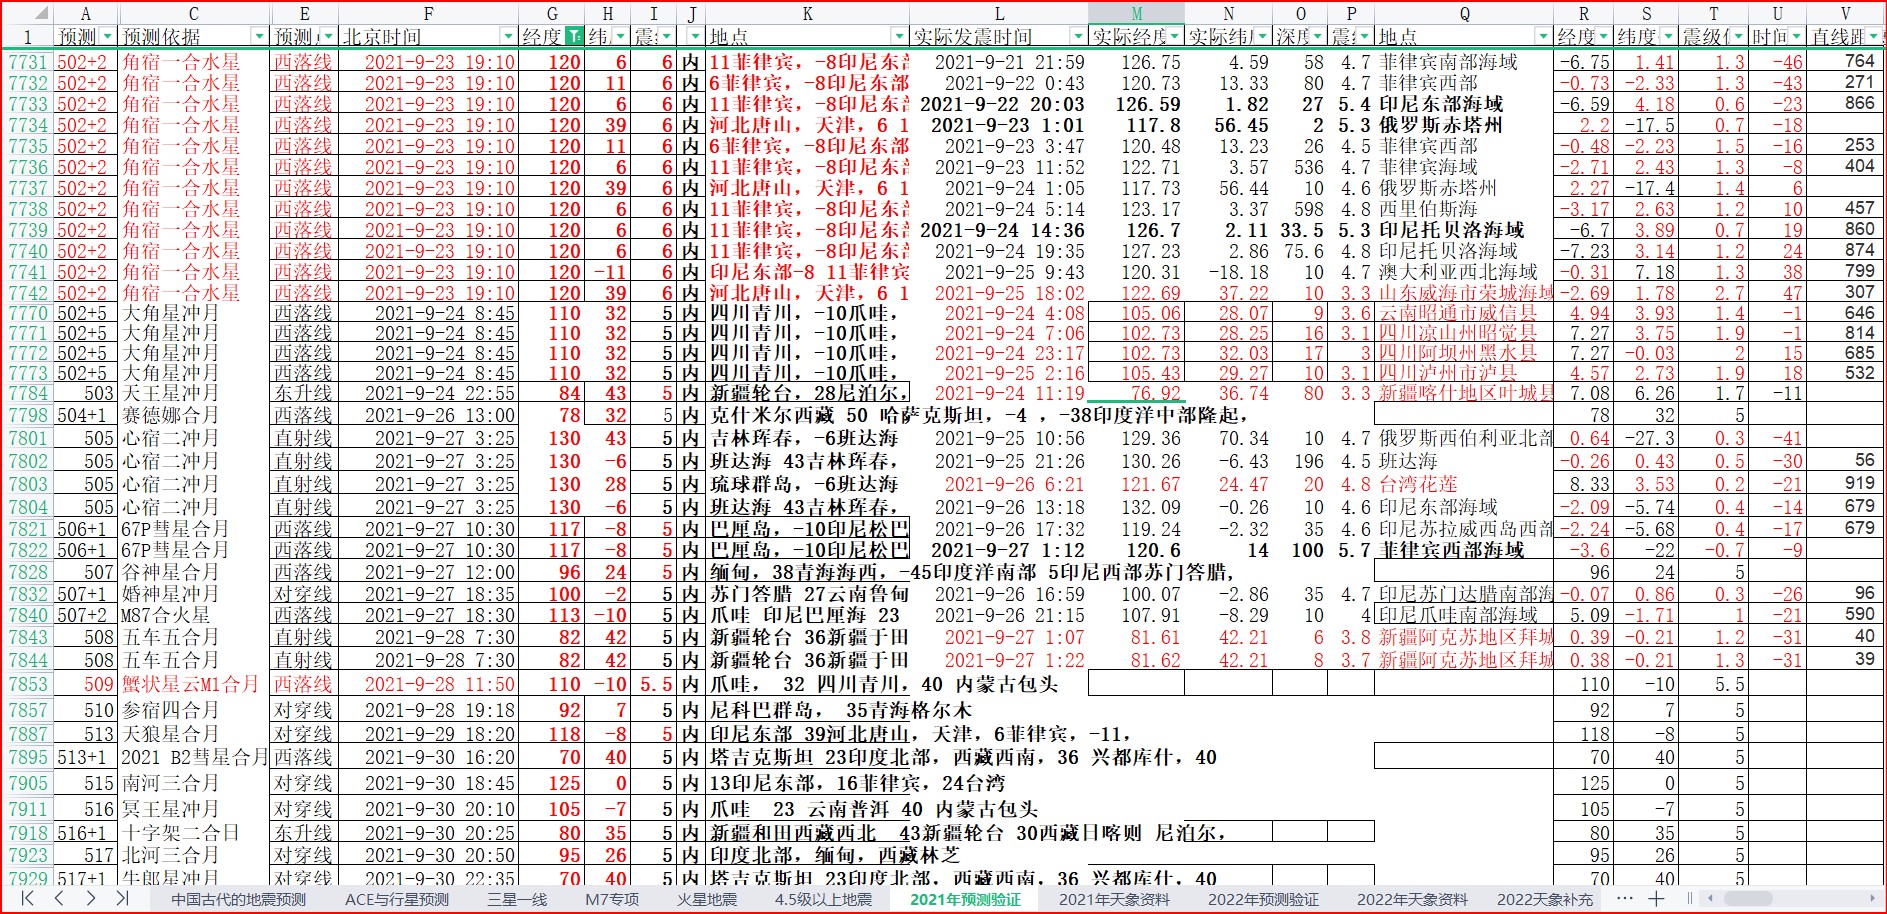 中国区域地震预测验证2021-9-27日晨.jpg